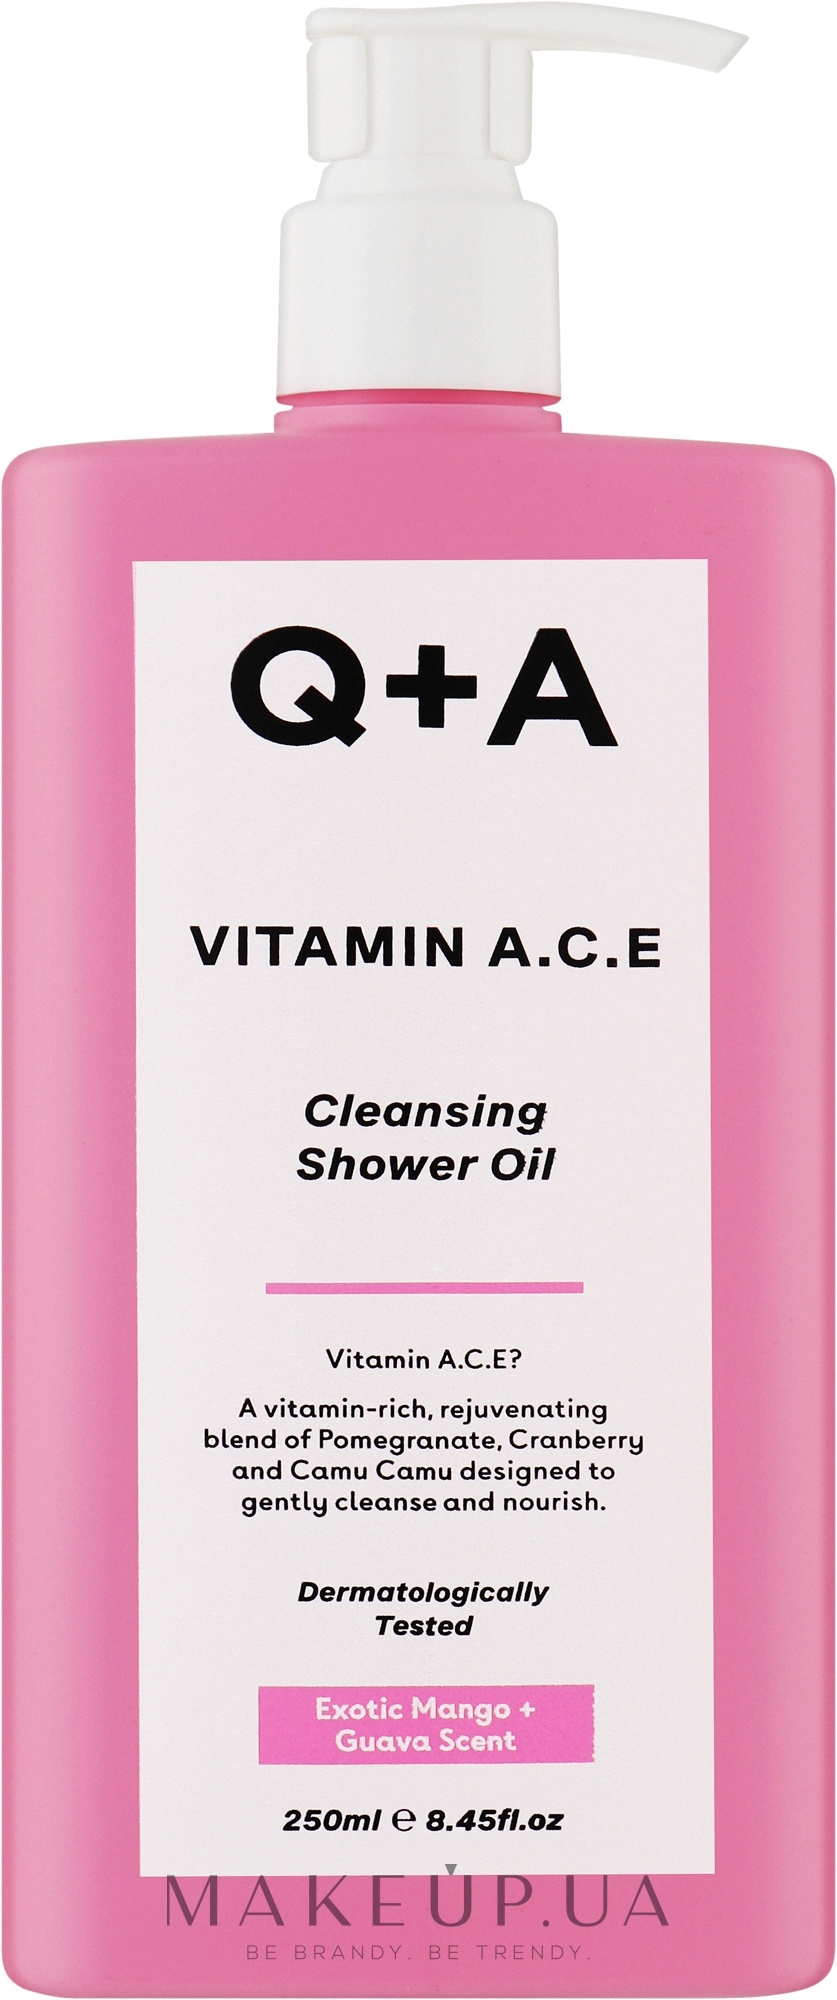 Вітамінізована олія для душу - Q+A Vitamin A.C.E Cleansing Shower Oil — фото 250ml